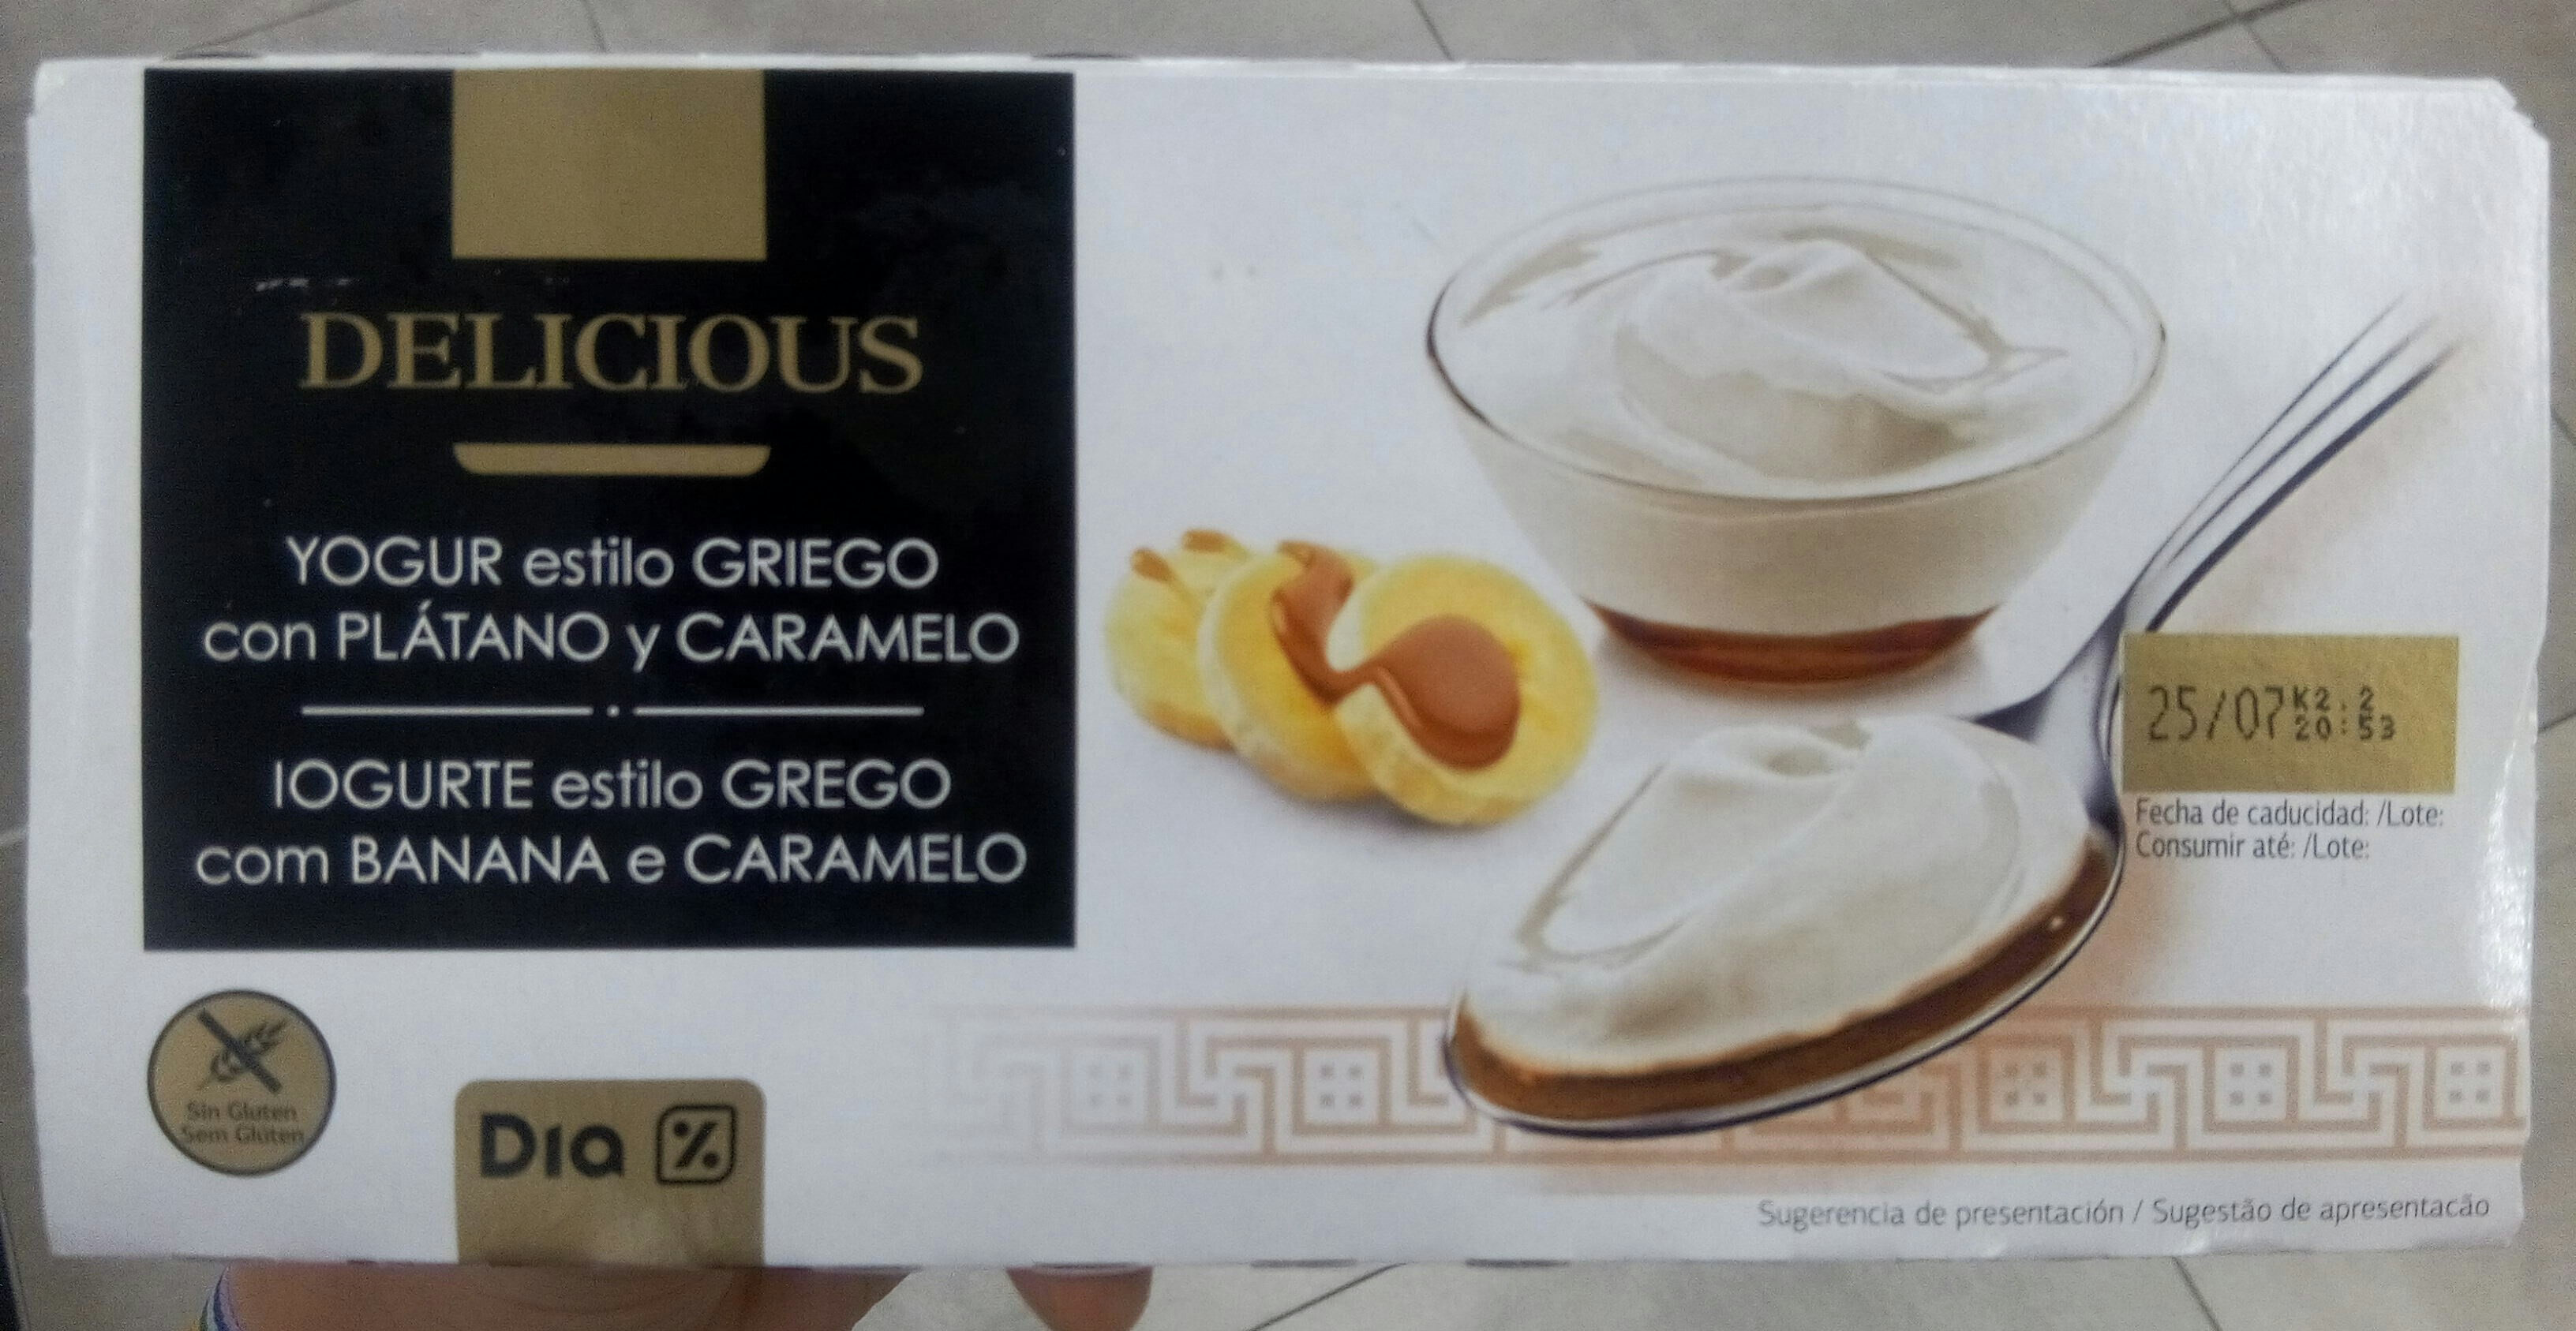 Delicious yogur estilo Griego con plátano y caramelo - Product - es